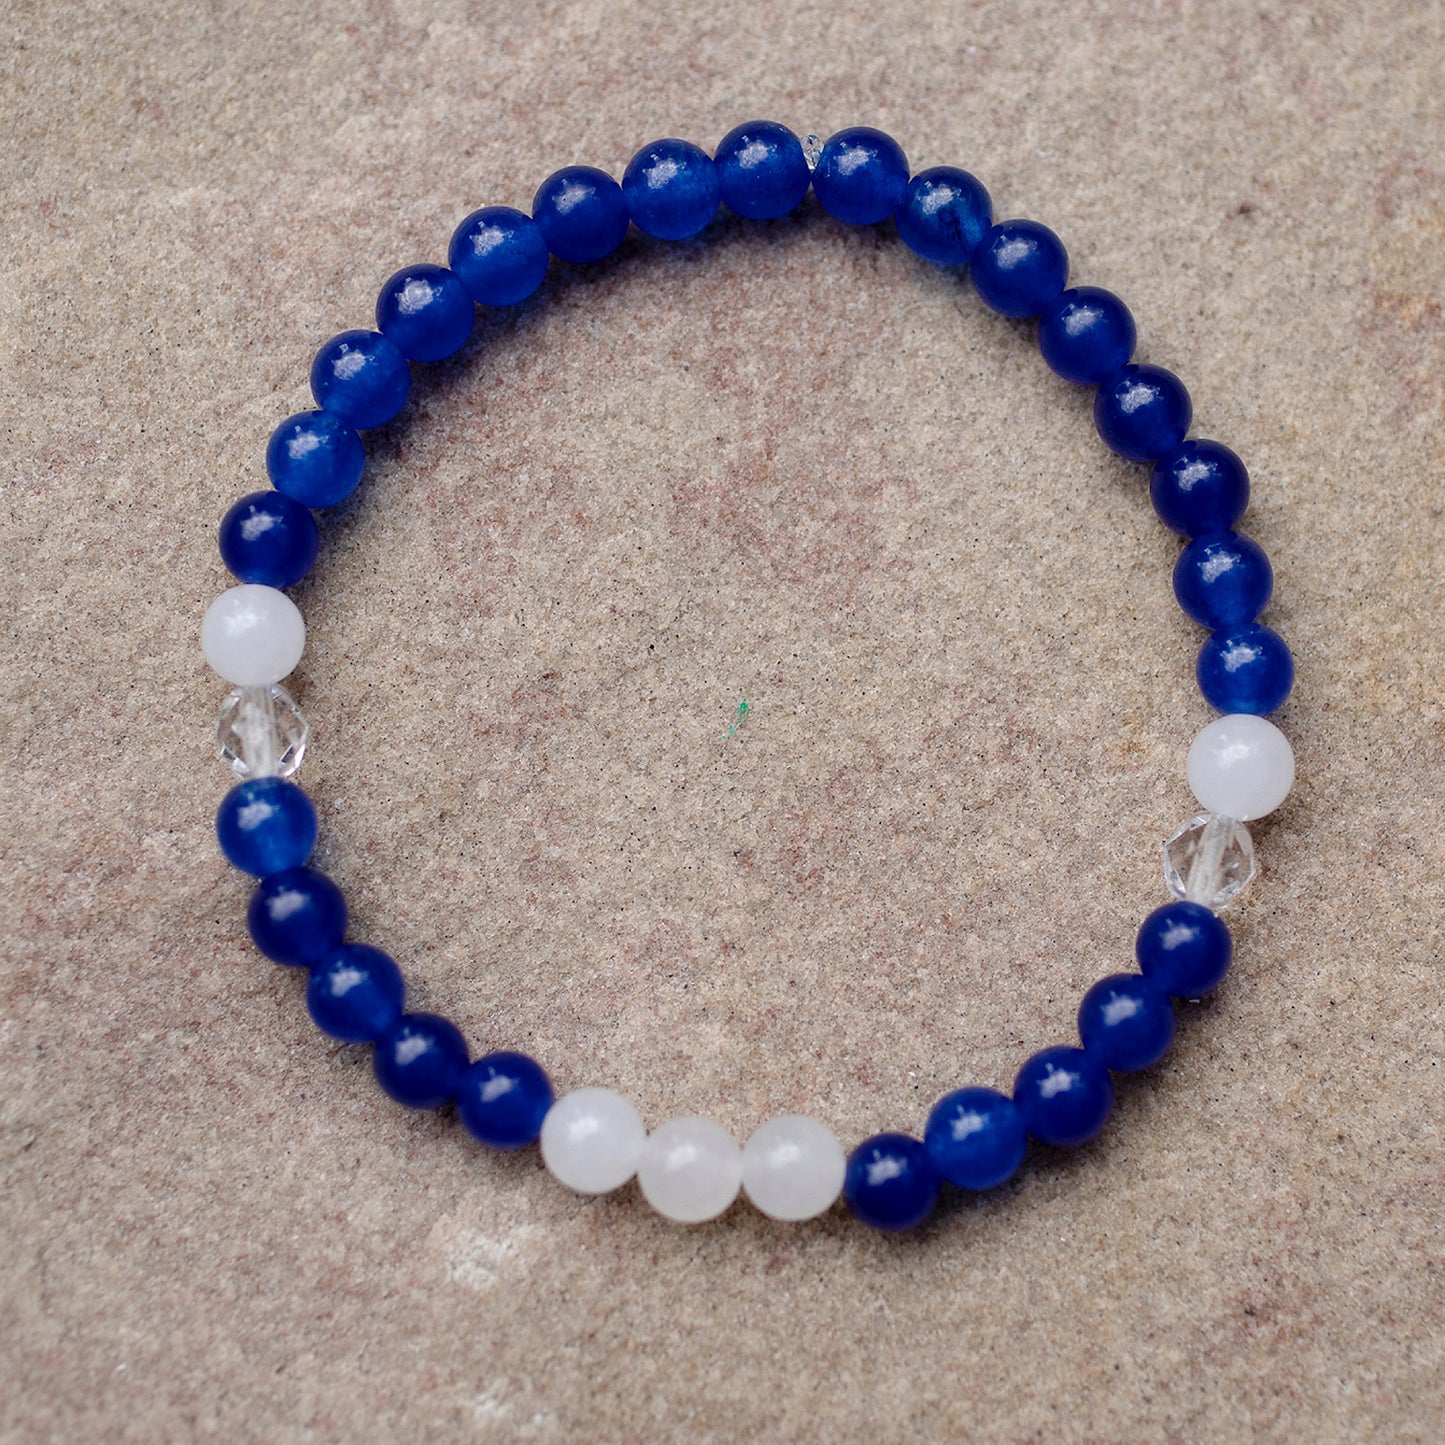 Bracelet de jade saphir et blanc (bleu et blanc sur un fond de sable)